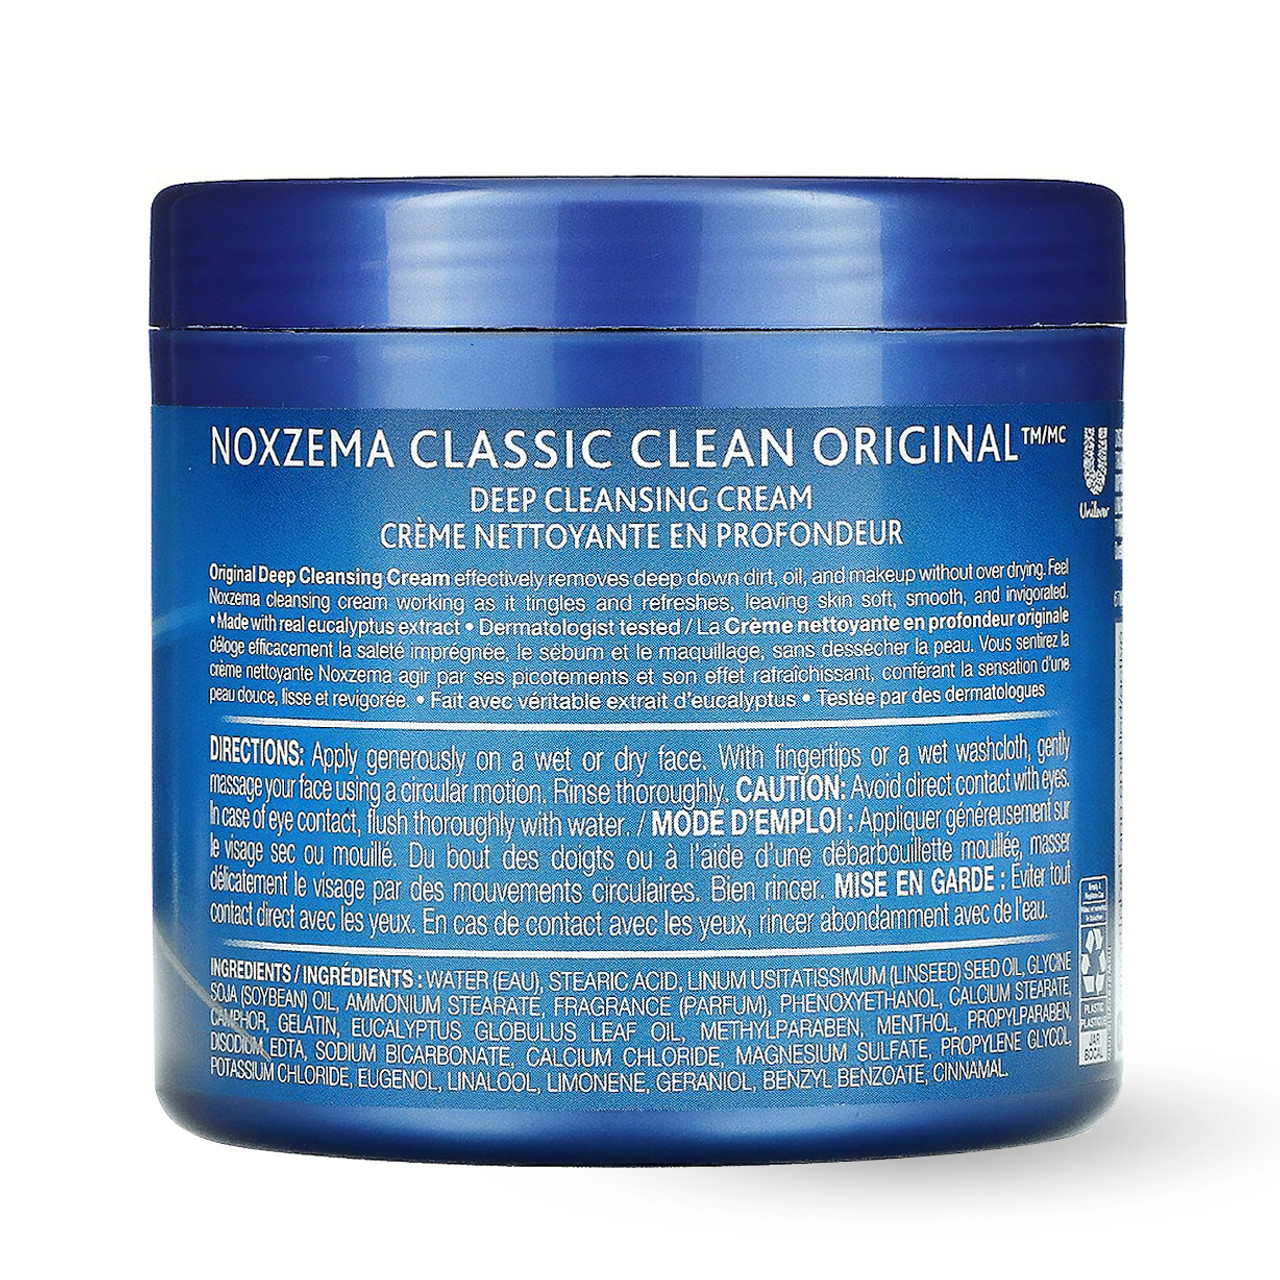 Original Deep Cleansing Cream, Product